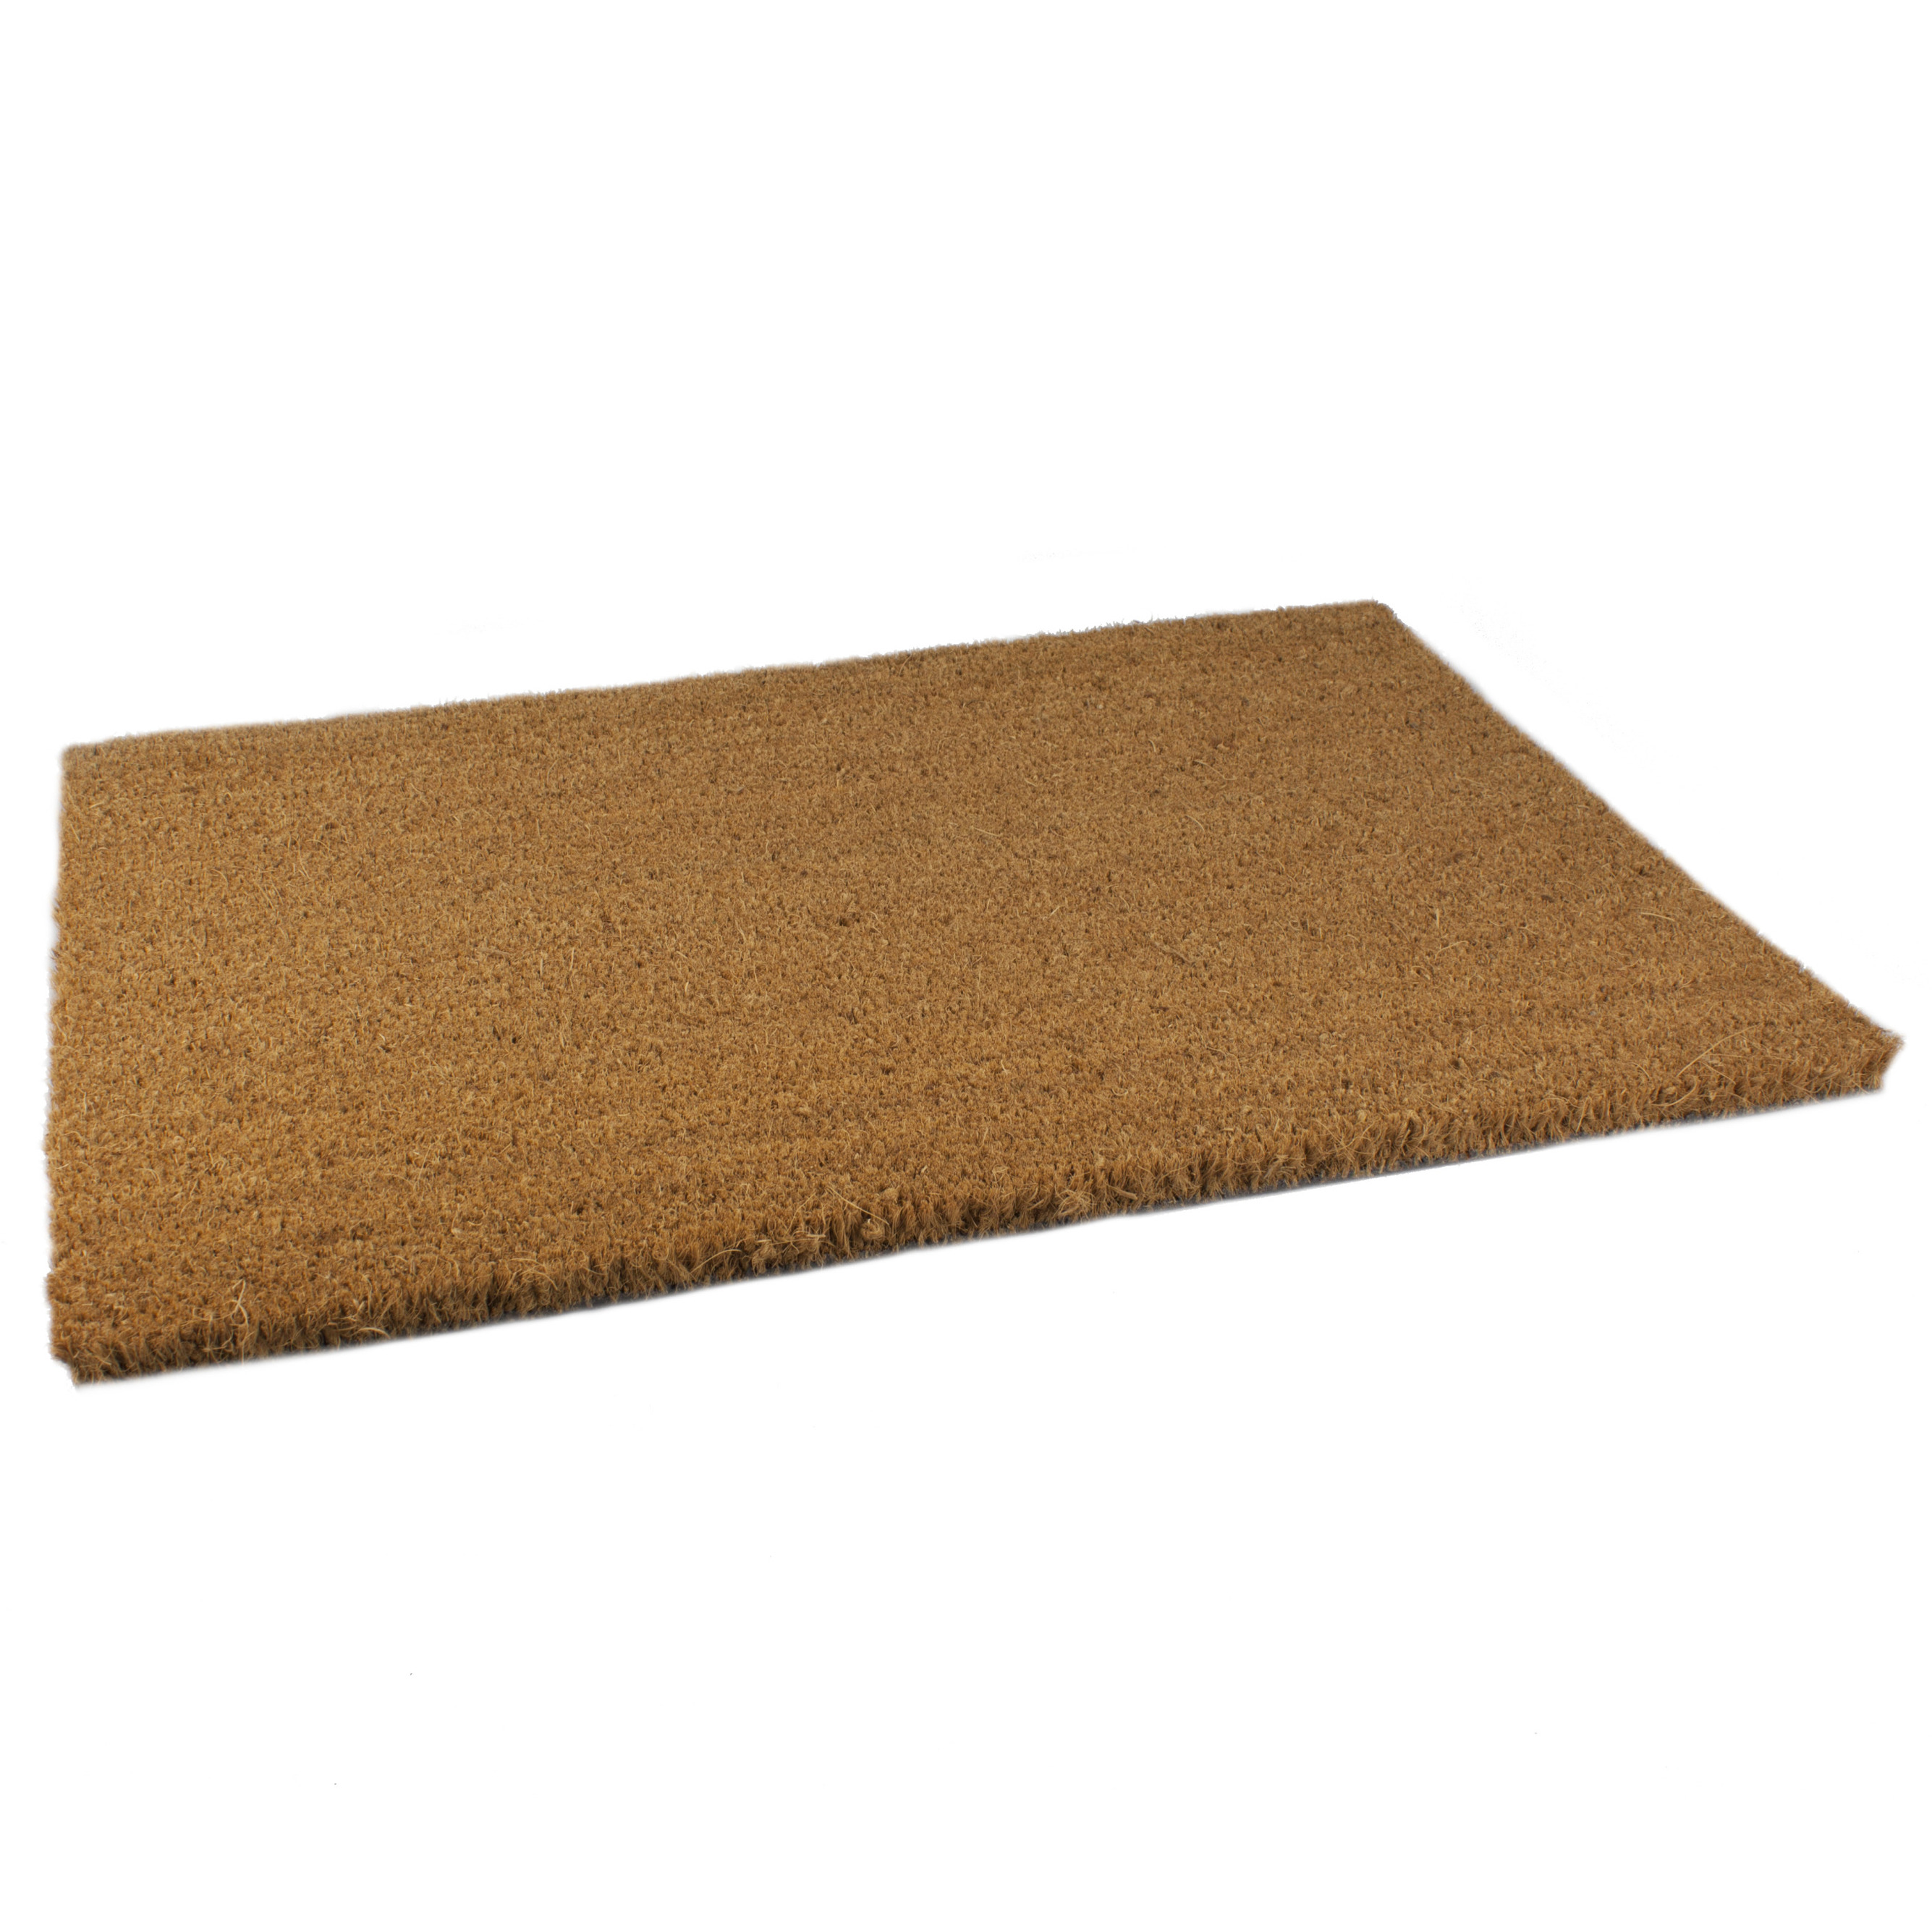 2x Stuks anti slip deurmatten-vloermatten pvc-kokos bruin 60 x 40 cm voor binnen